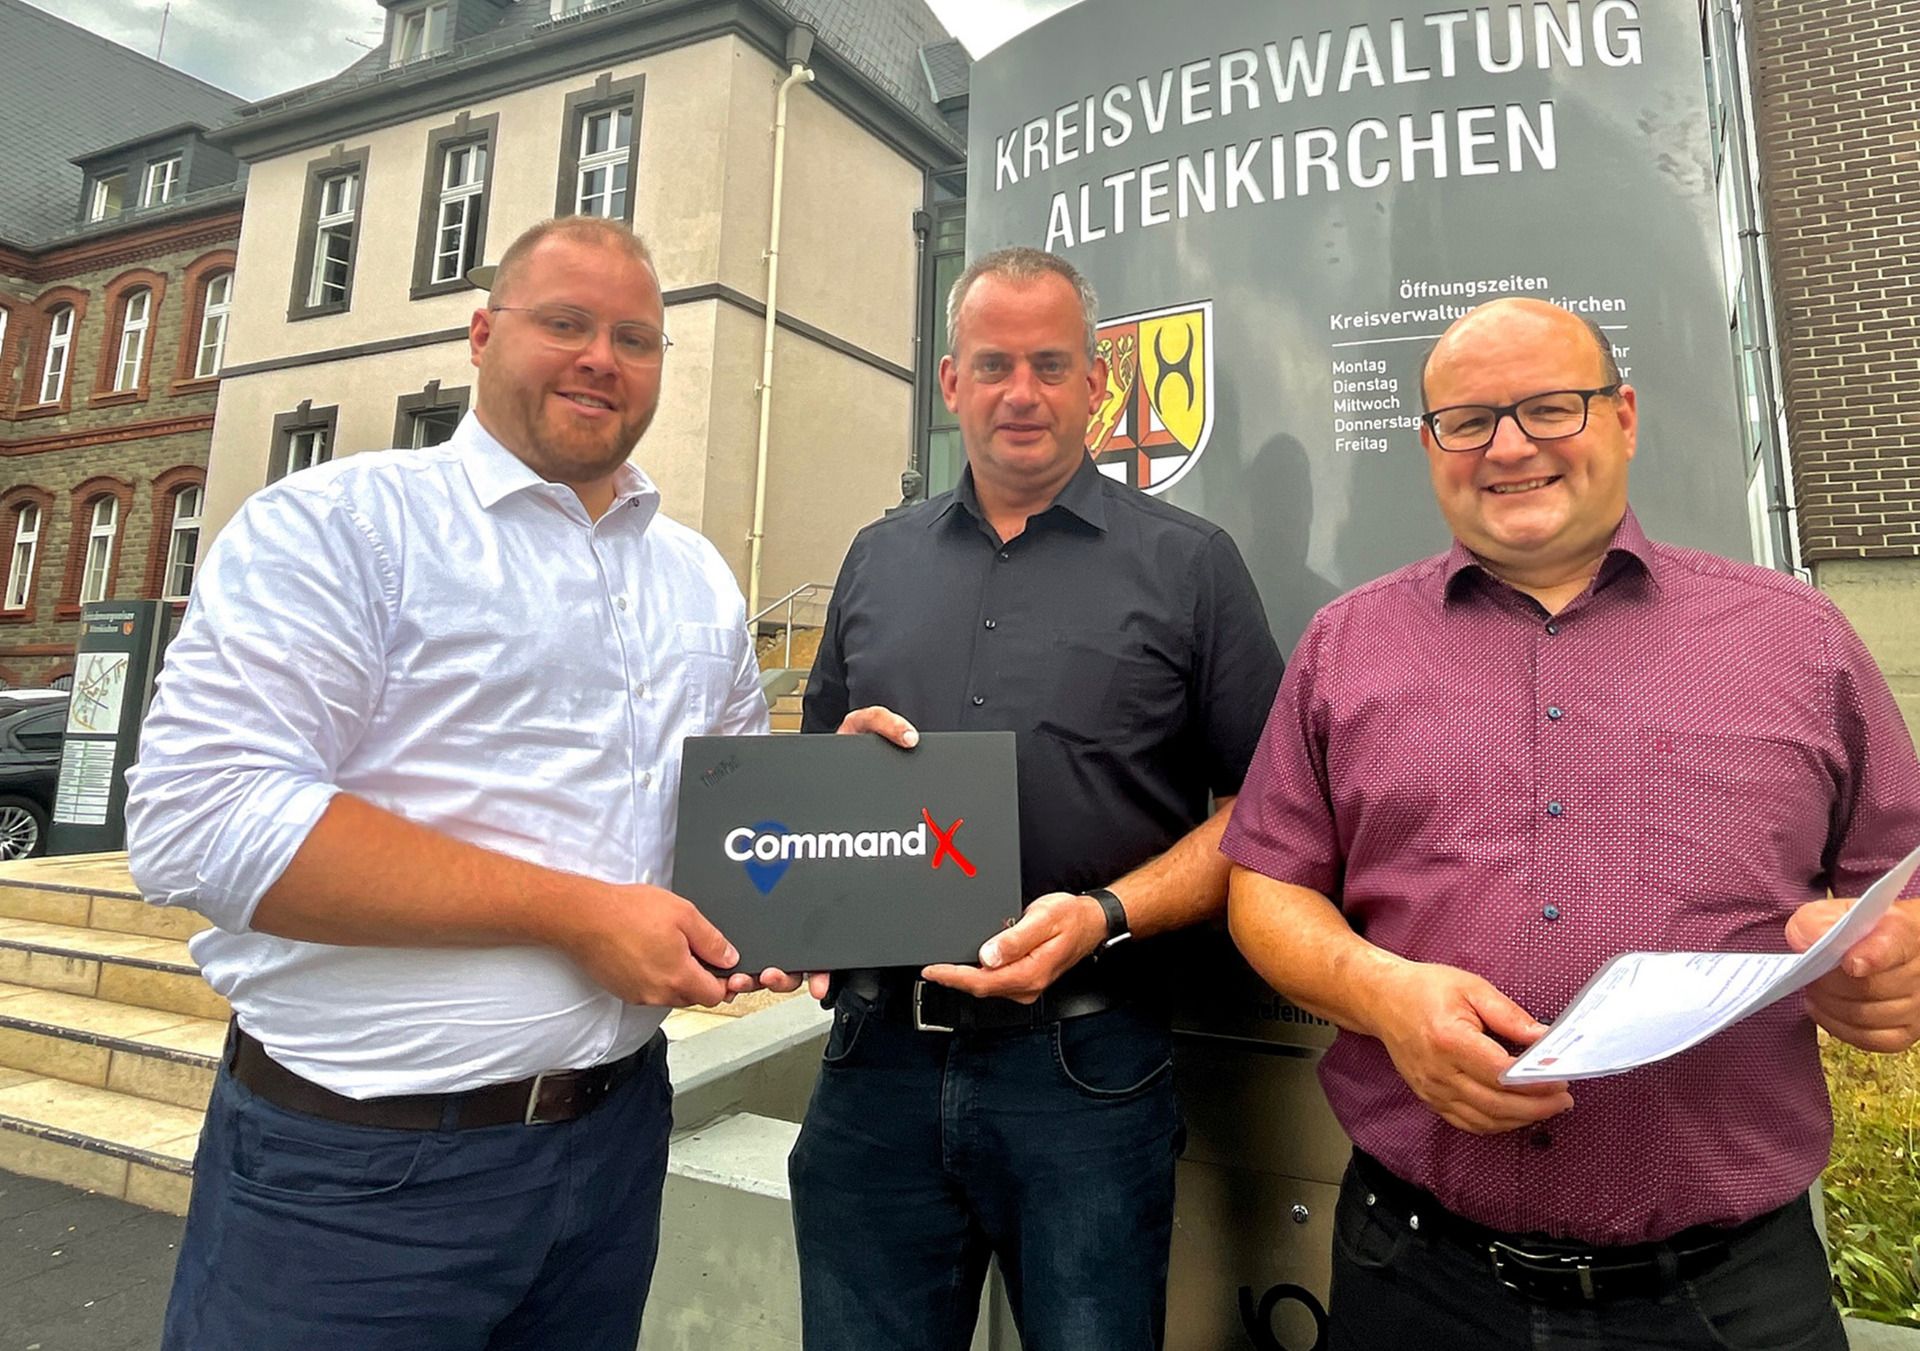 Landkreis Altenkirchen zukünftig mit CommandX ausgestattet